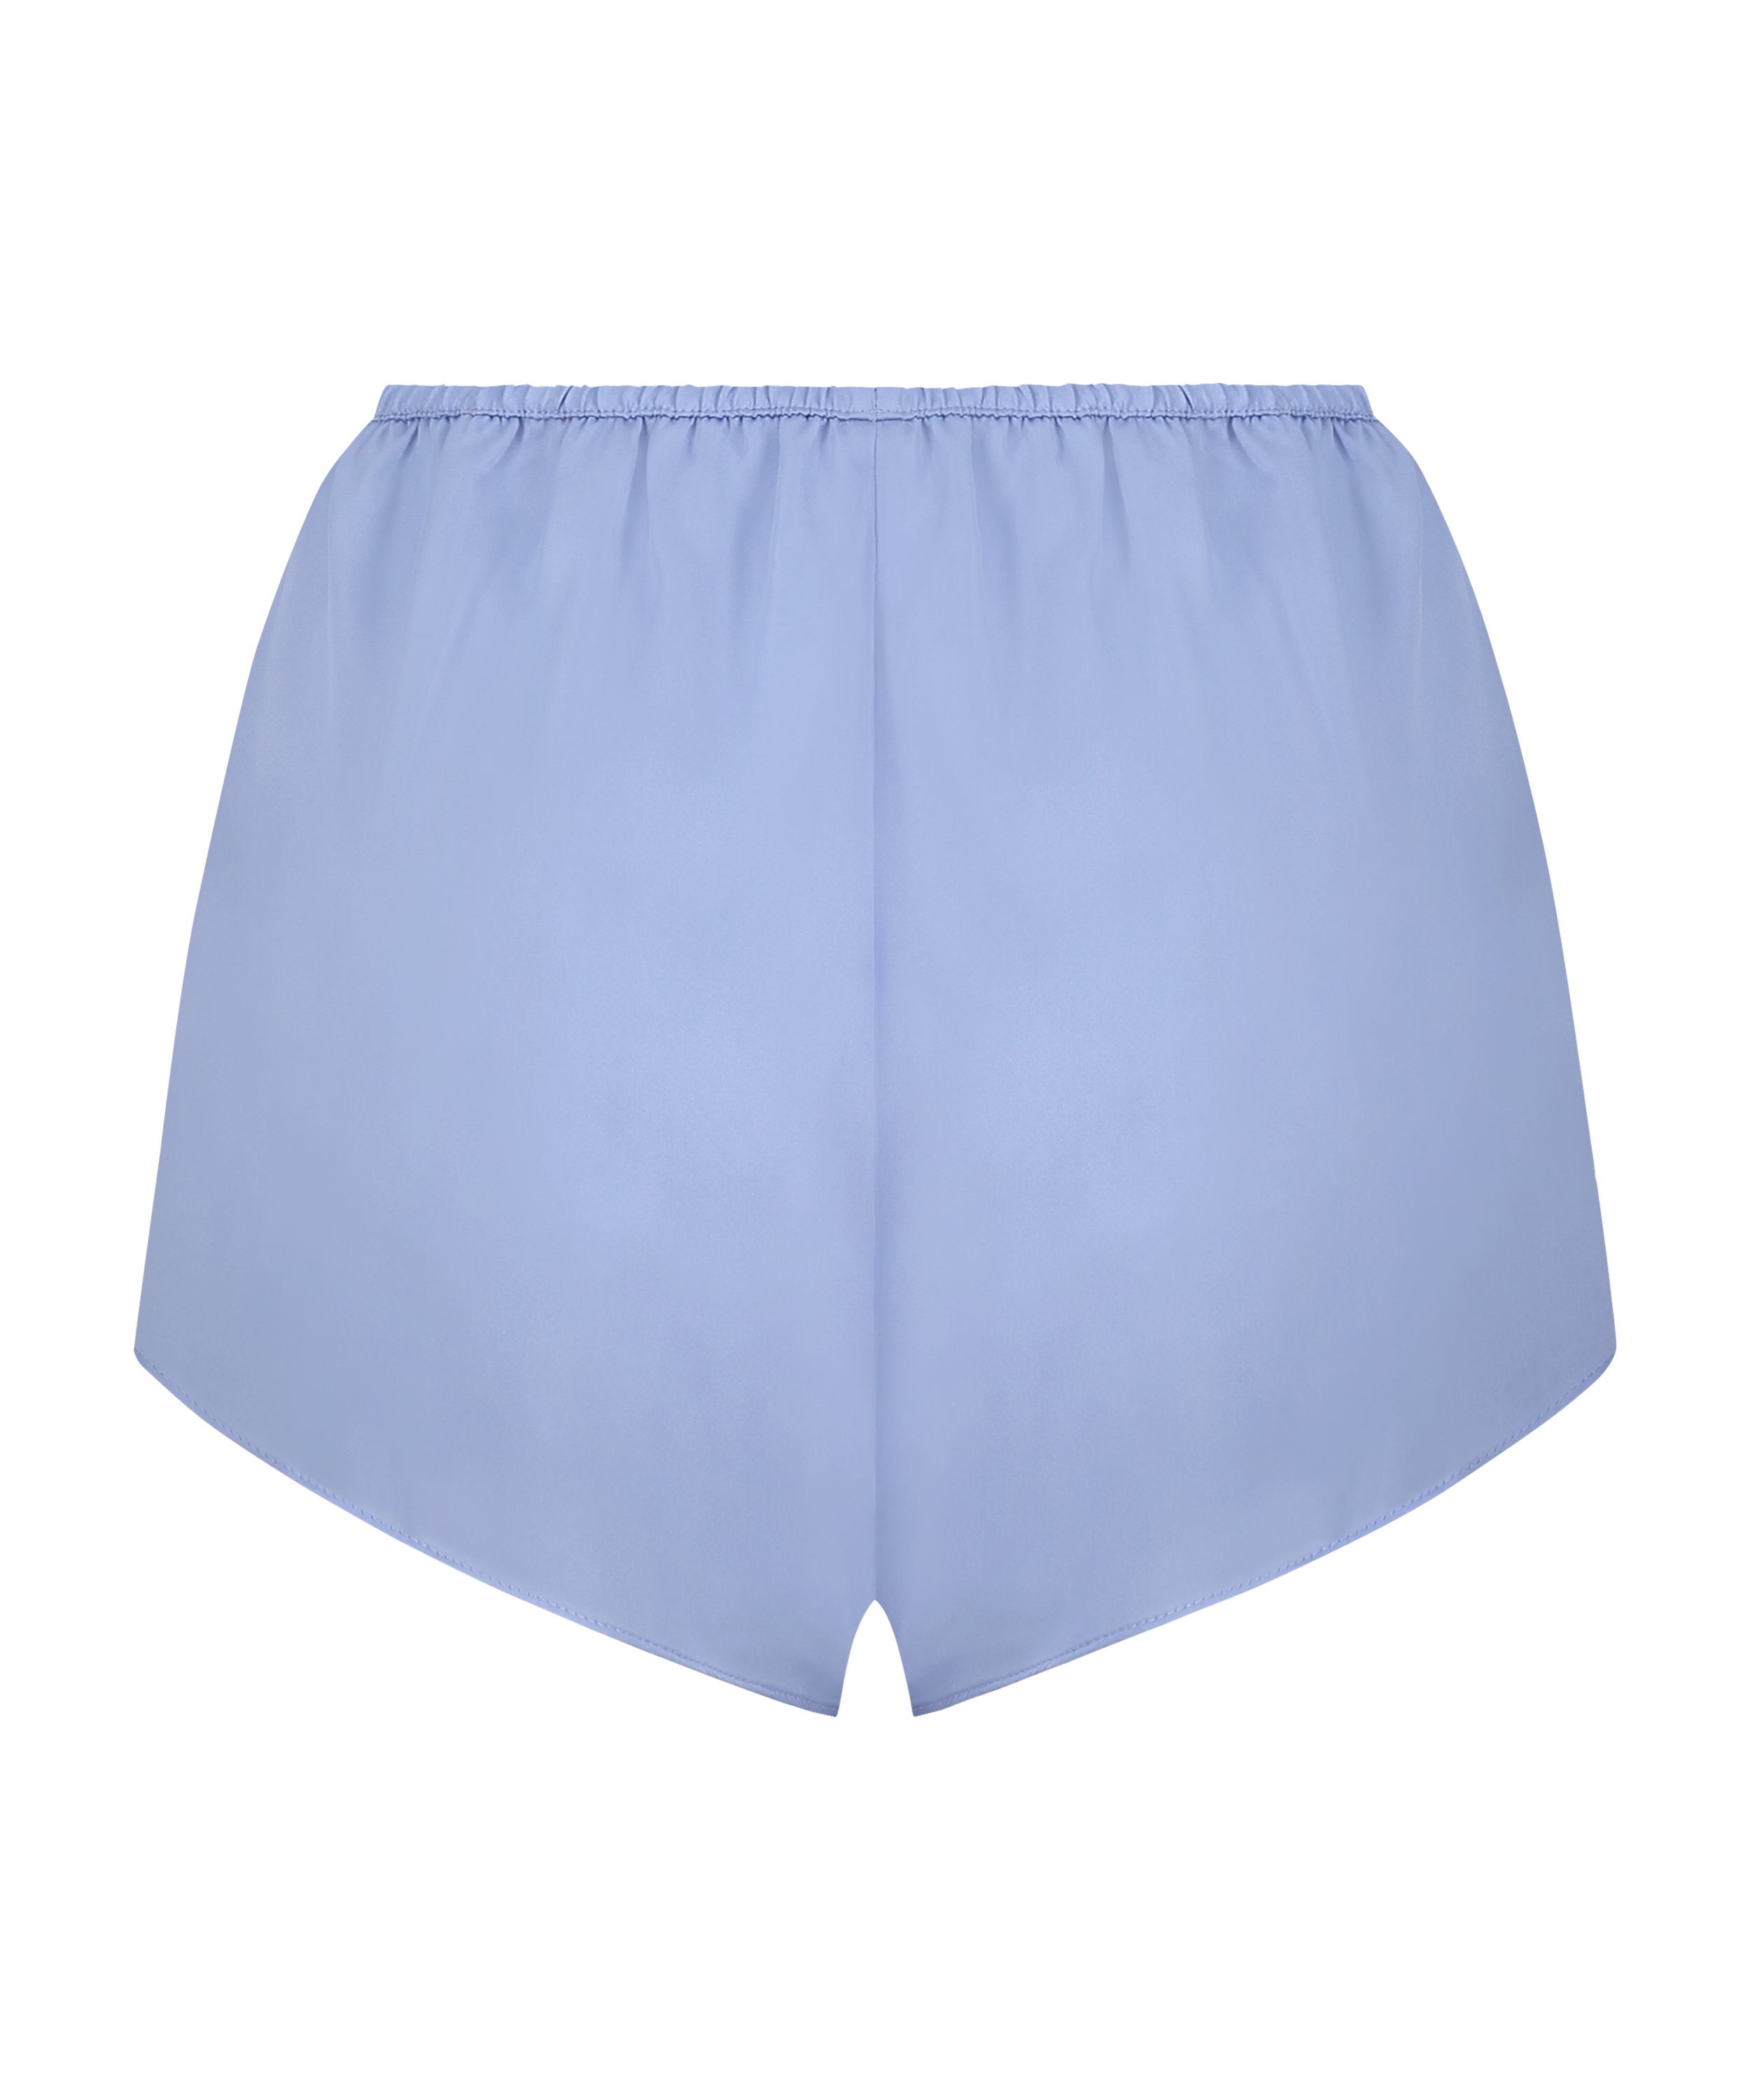 Pyjama-Shorts Satin Marcela, Blau, main